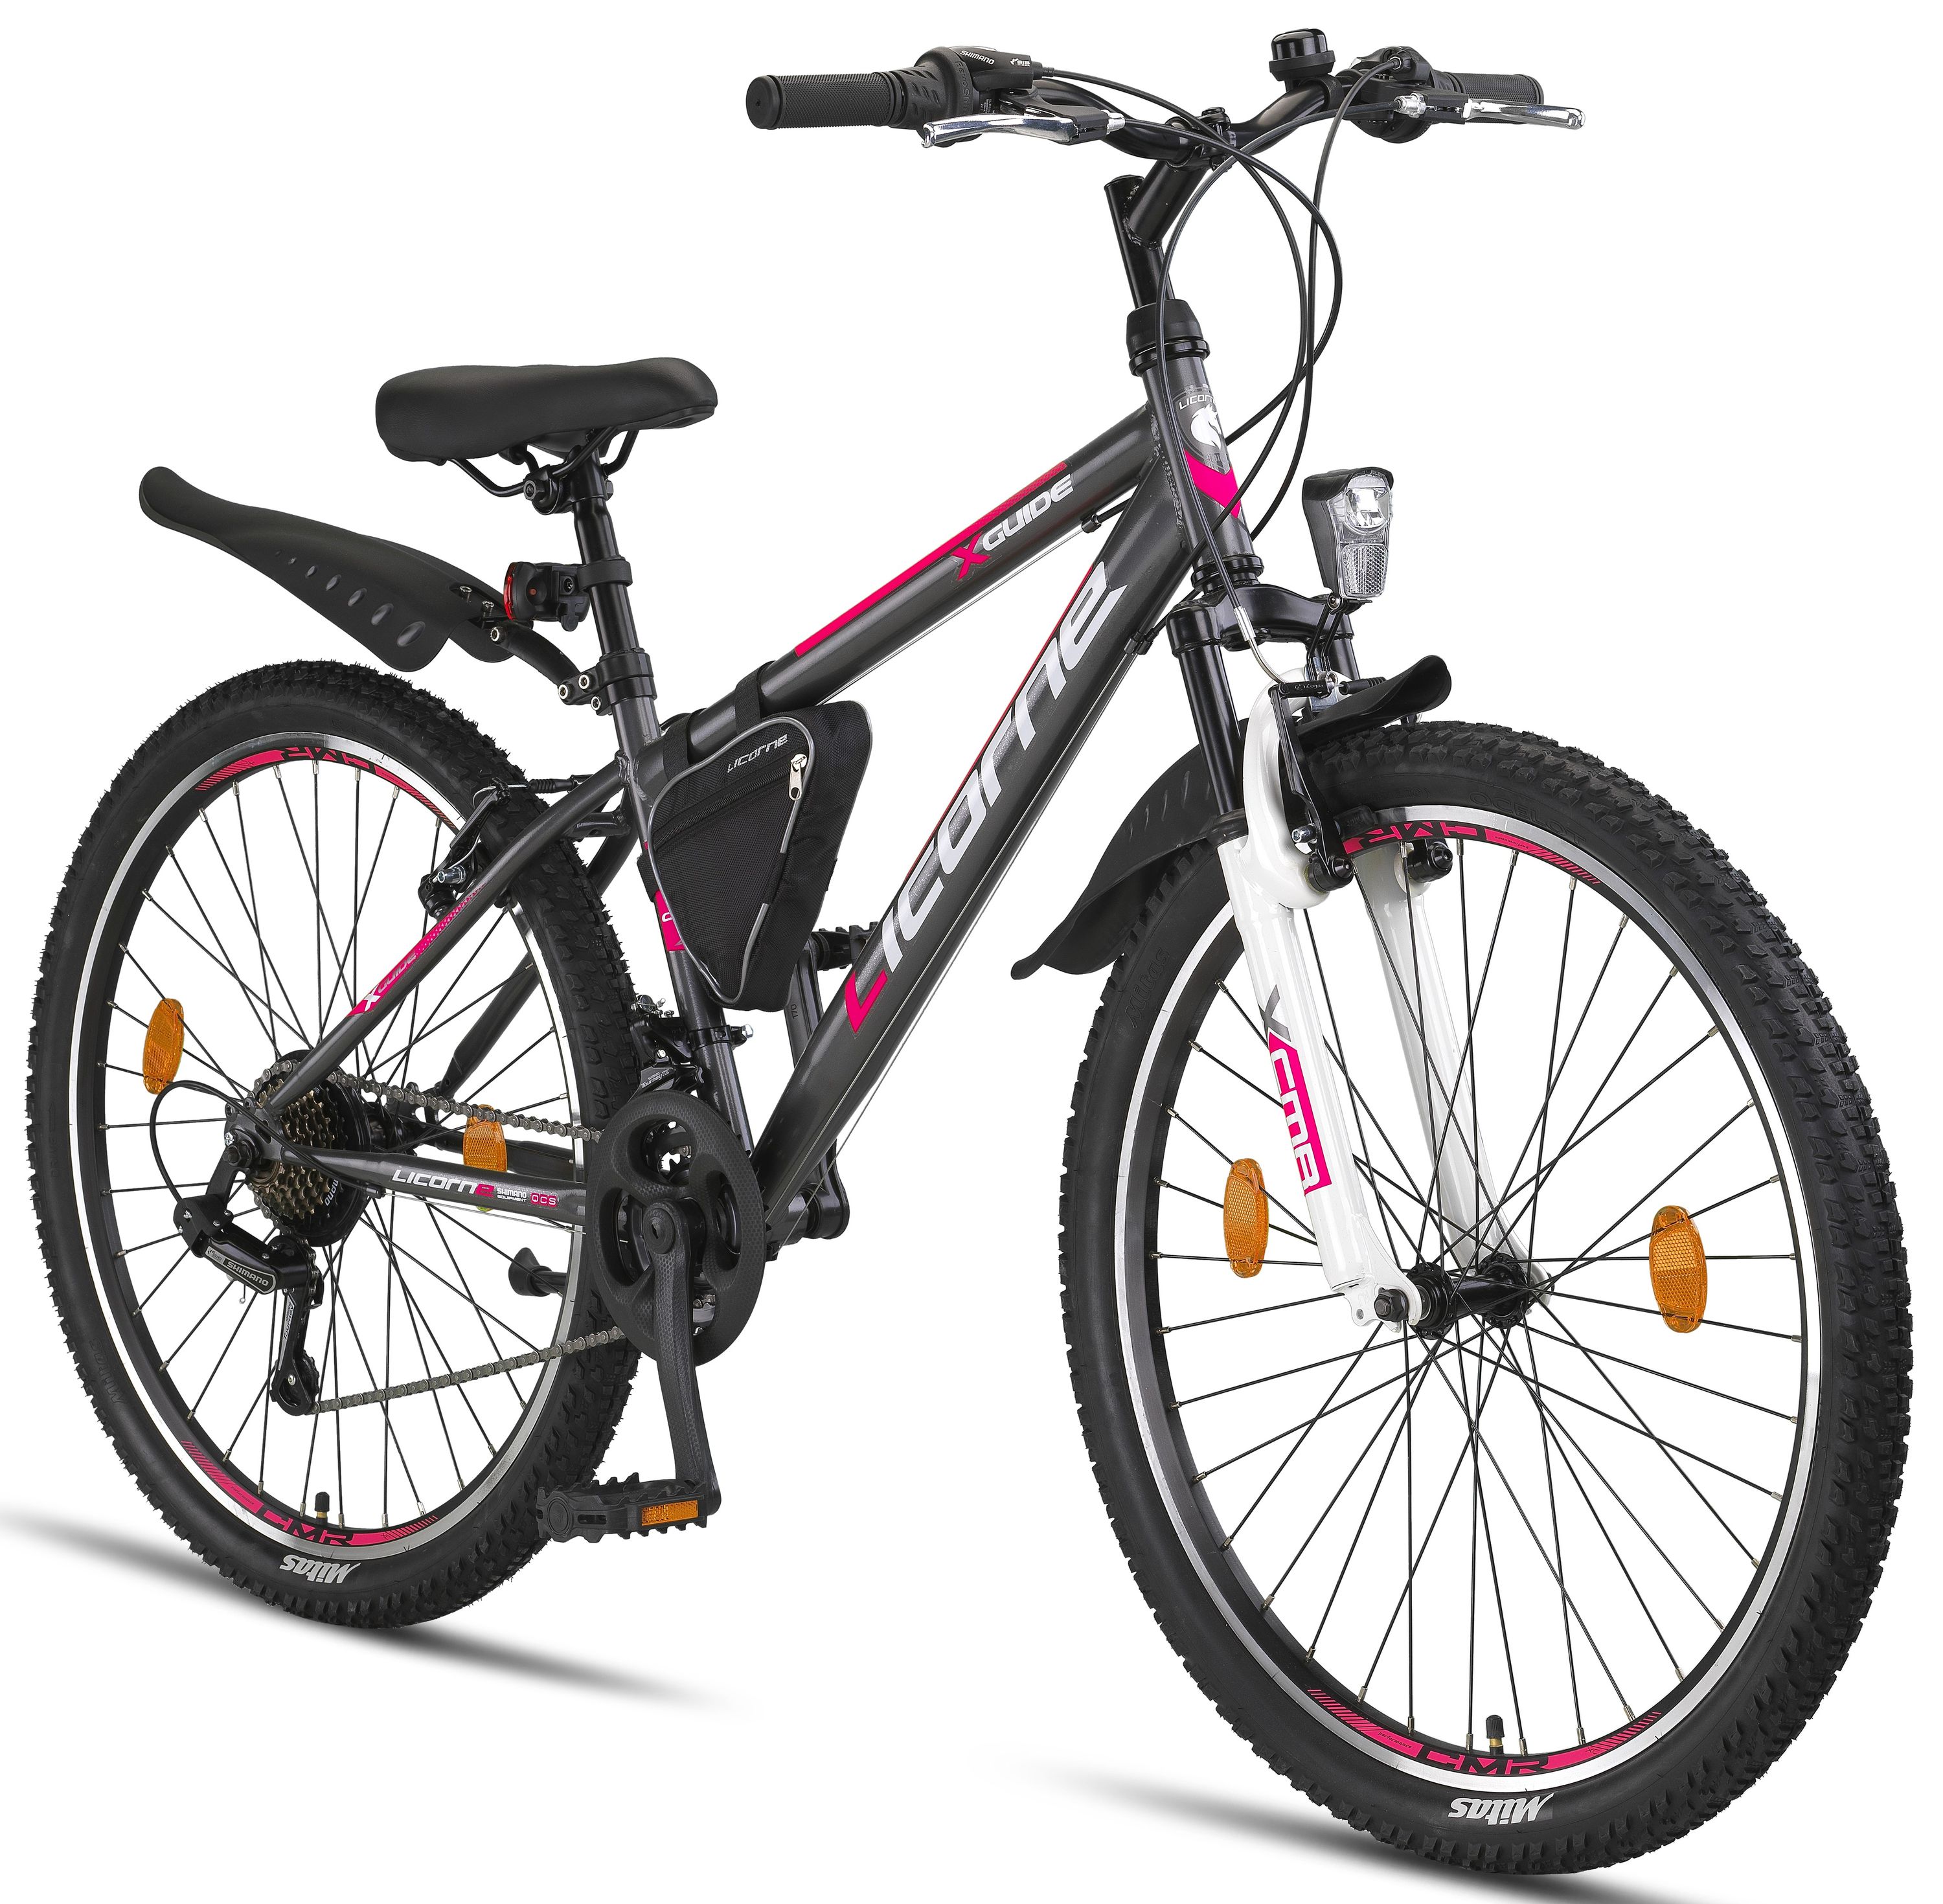 Licorne Bike Guide Bicicleta de montaña Premium en 20, 24 y 26 pulgadas - bicicleta para niñas, niños, hombres y mujeres - cambio de velocidades Shimano 21, bicicleta para niños, niños